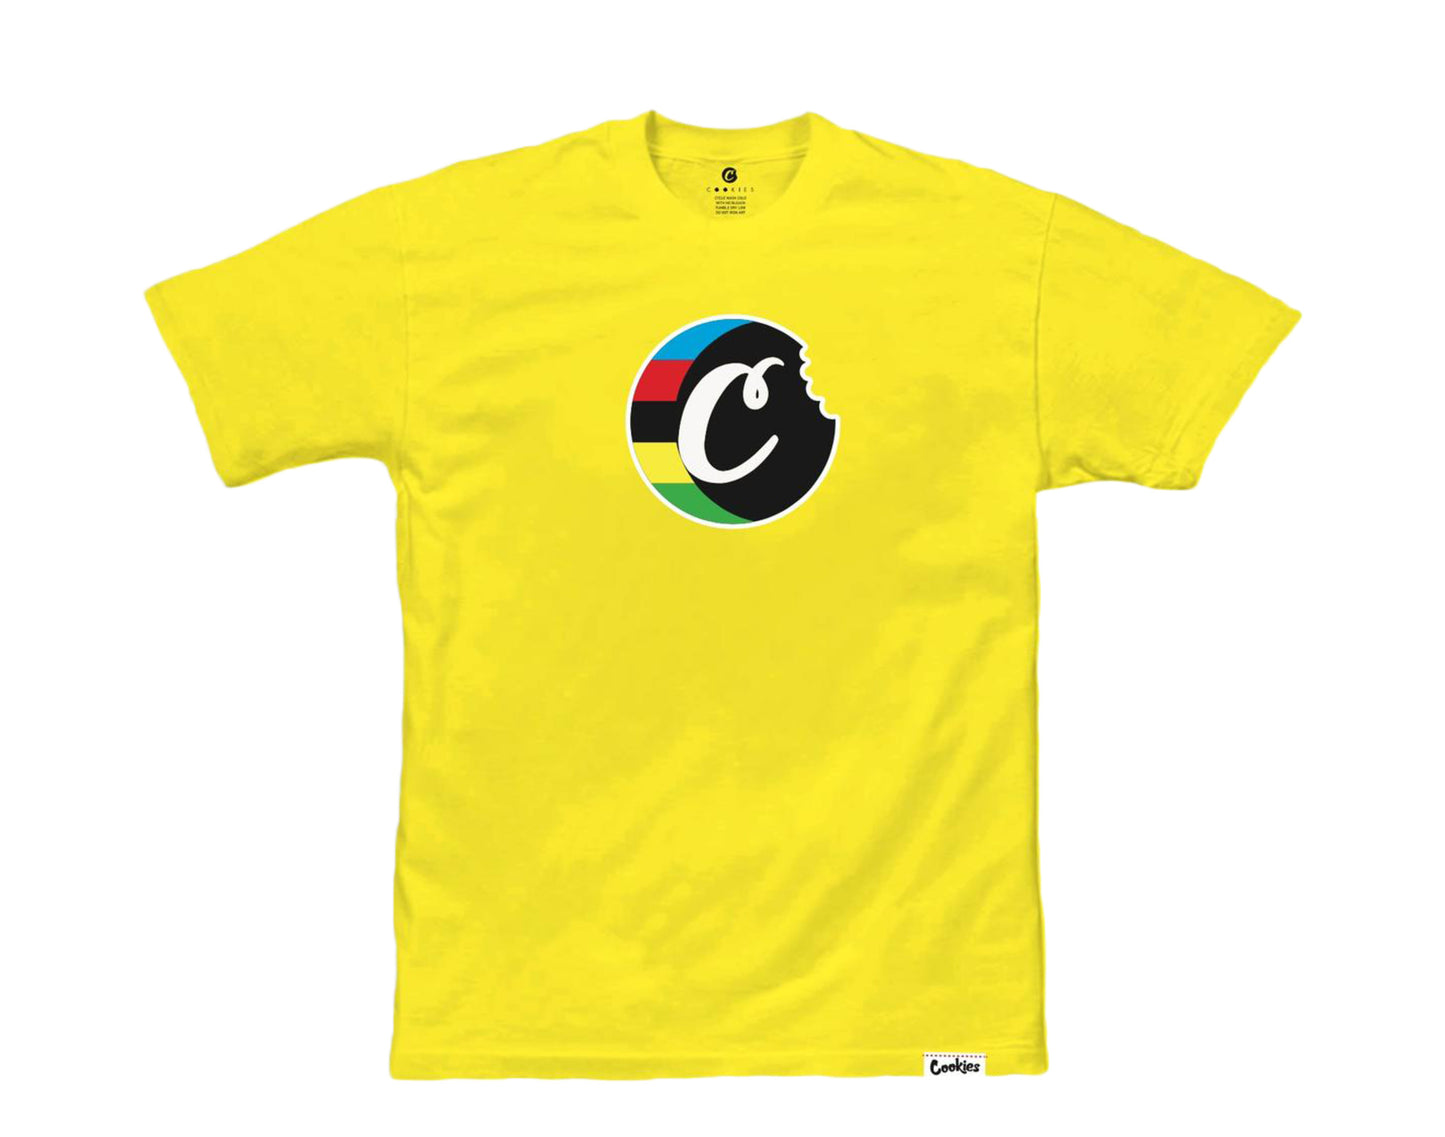 Cookies Tour De Fire C-Bite Logo Yellow Men's Tee Shirt 1543T3978-YEL